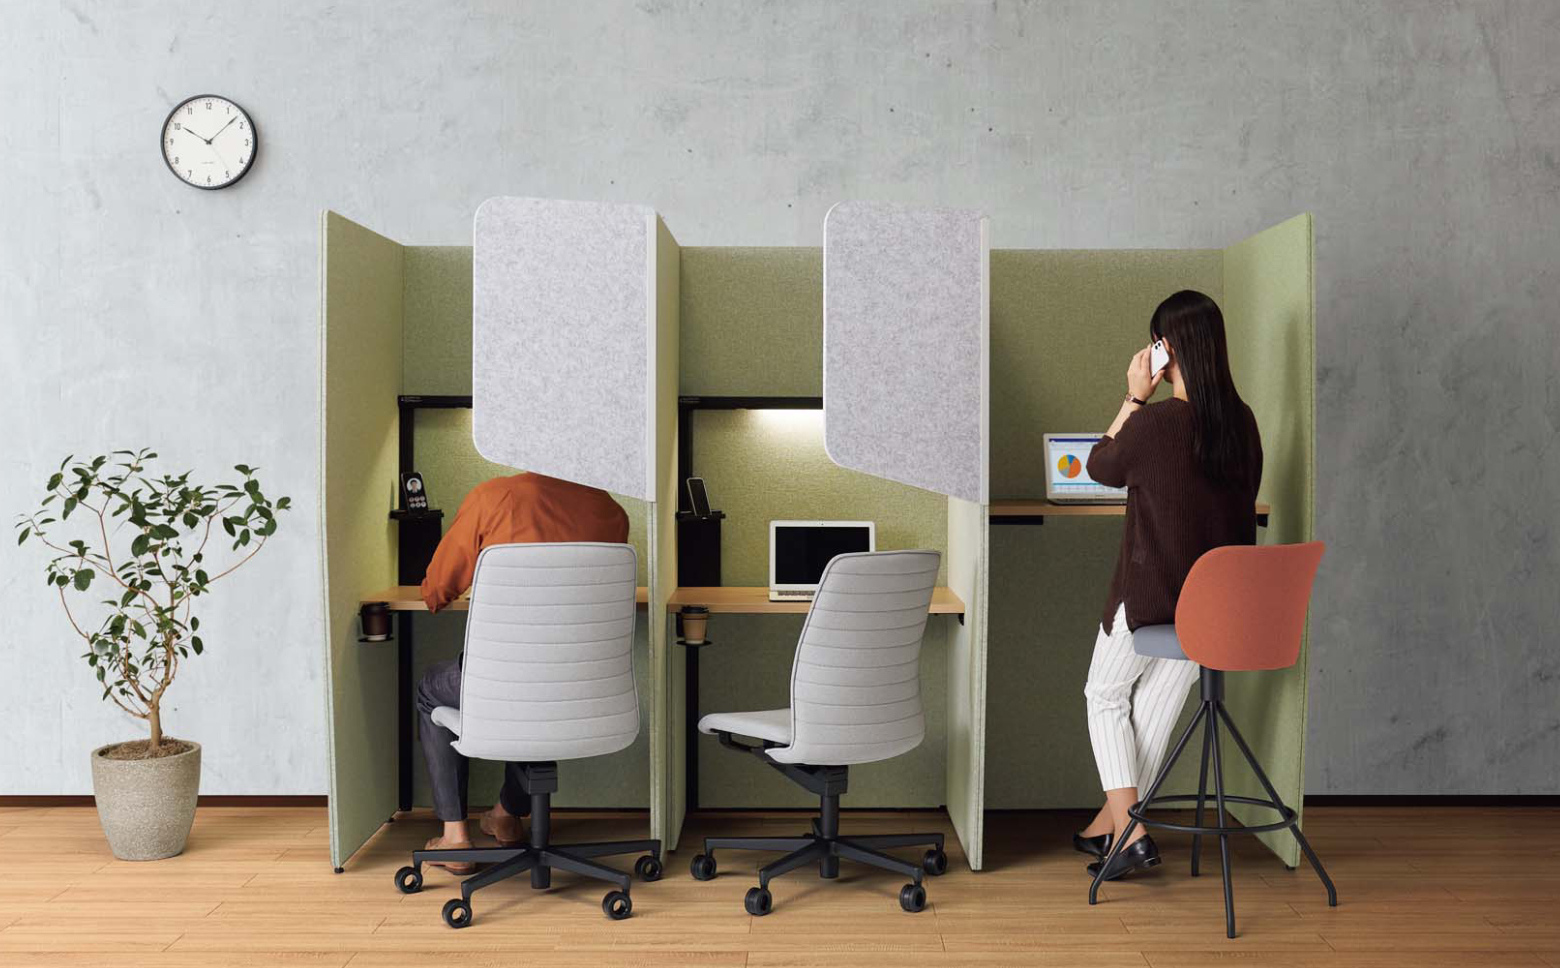 緑色のパネルで三面囲まれている簡易的な半個室ブースが3台並んでいるオフィス